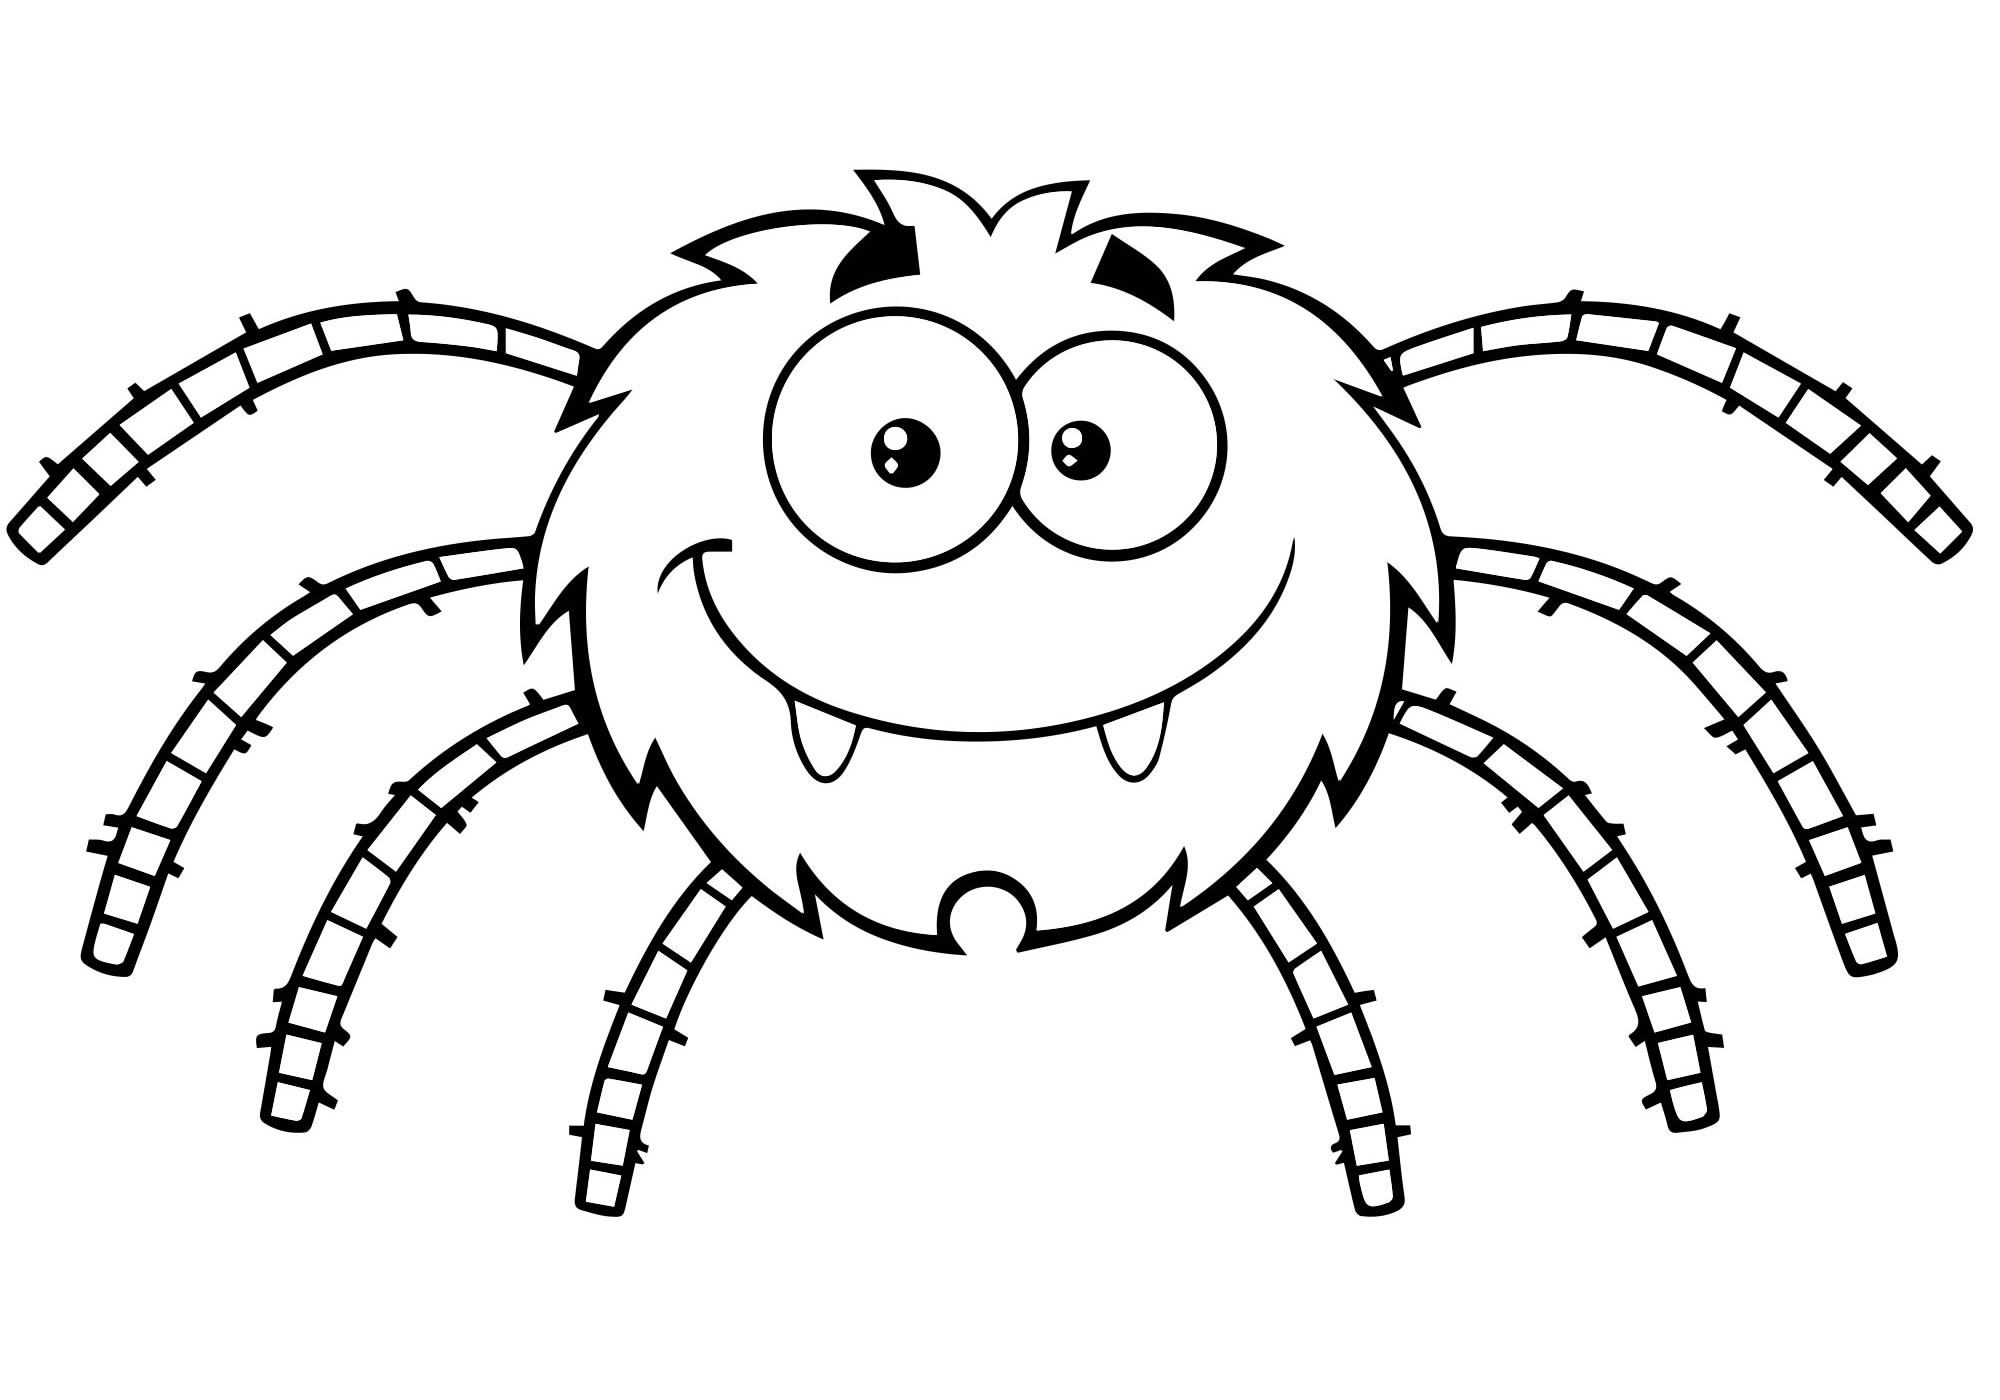 Раскраска паук Изображения – скачать бесплатно на Freepik